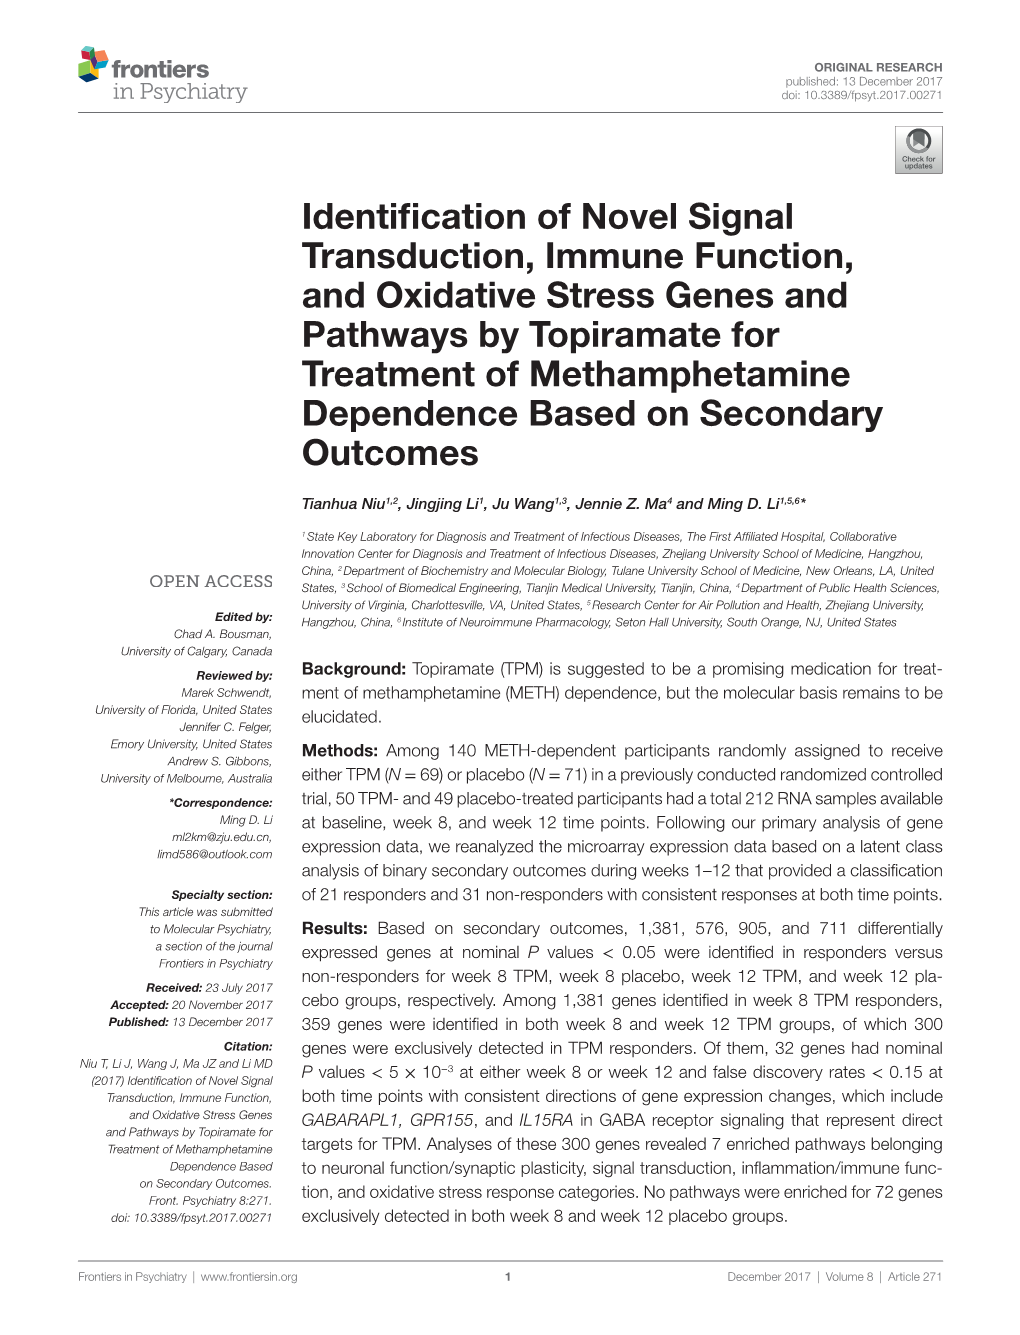 Identification of Novel Signal Transduction, Immune Function